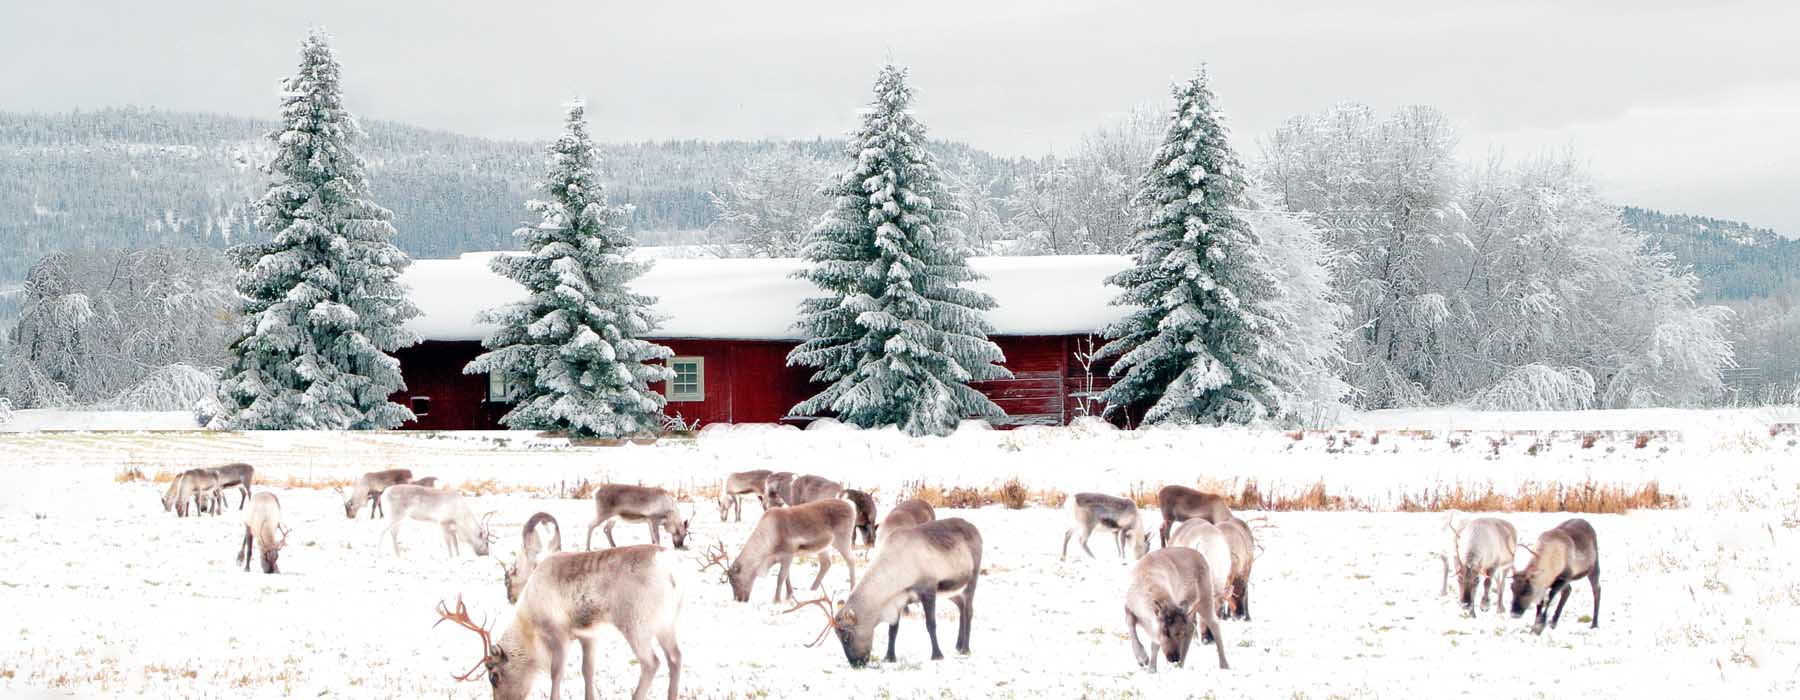 All our Finland<br class="hidden-md hidden-lg" /> Christmas Holidays